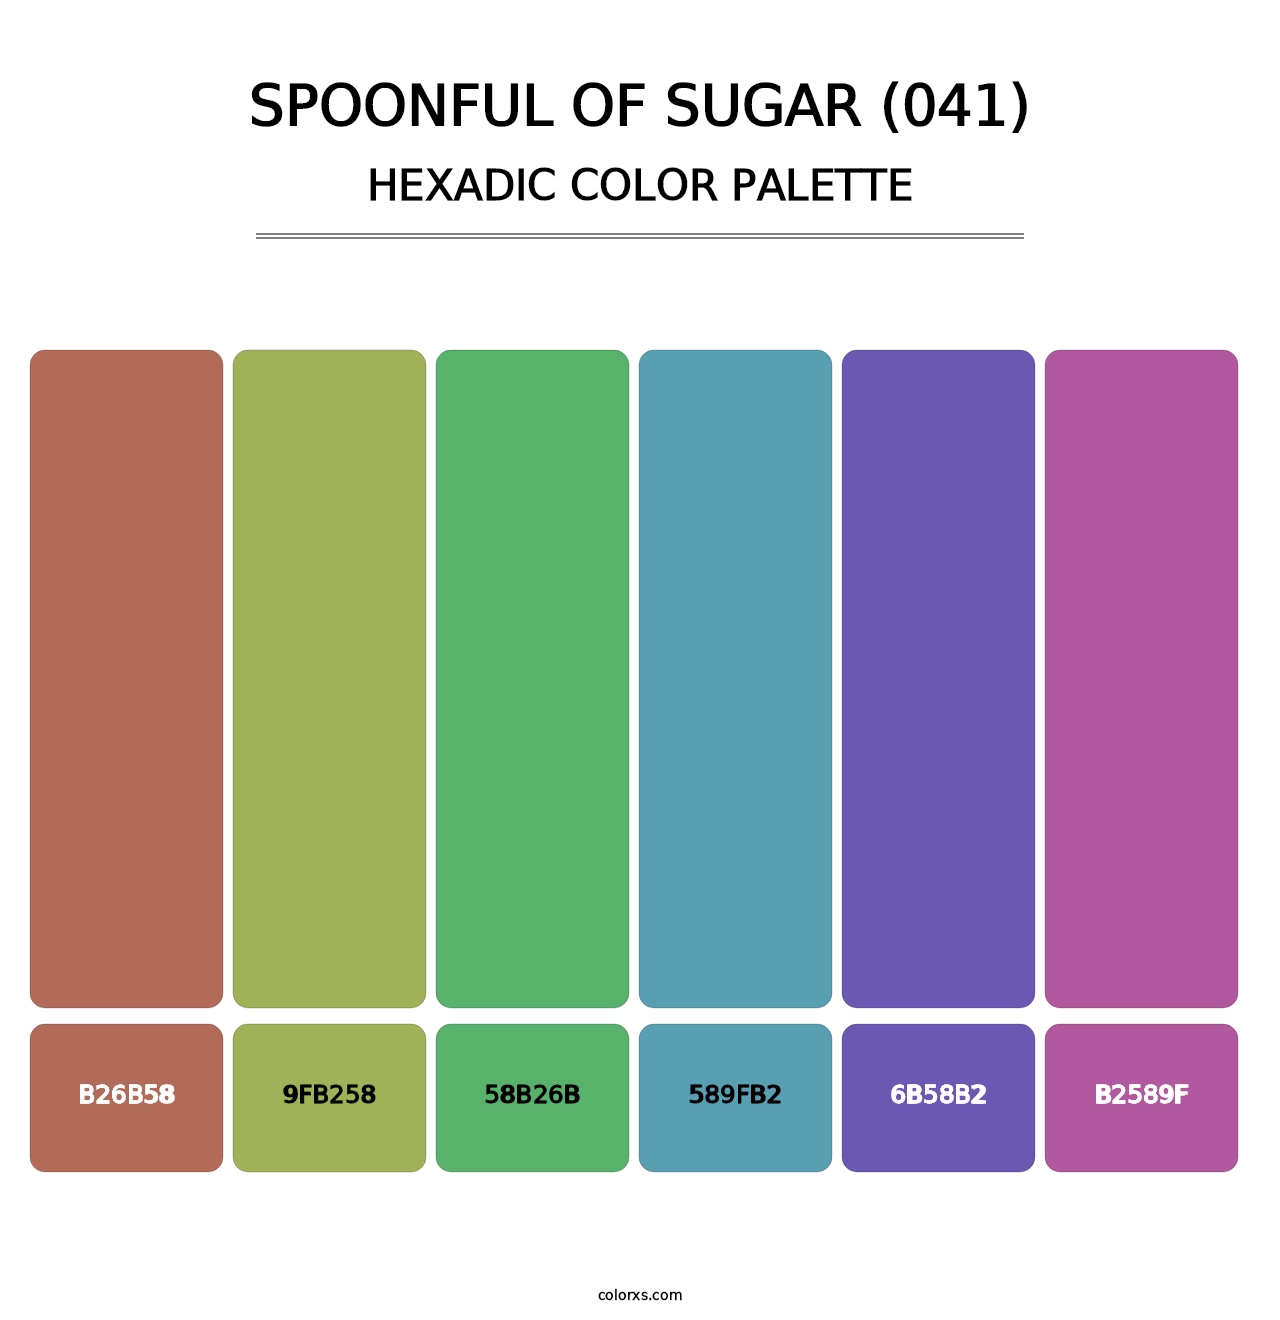 Spoonful of Sugar (041) - Hexadic Color Palette